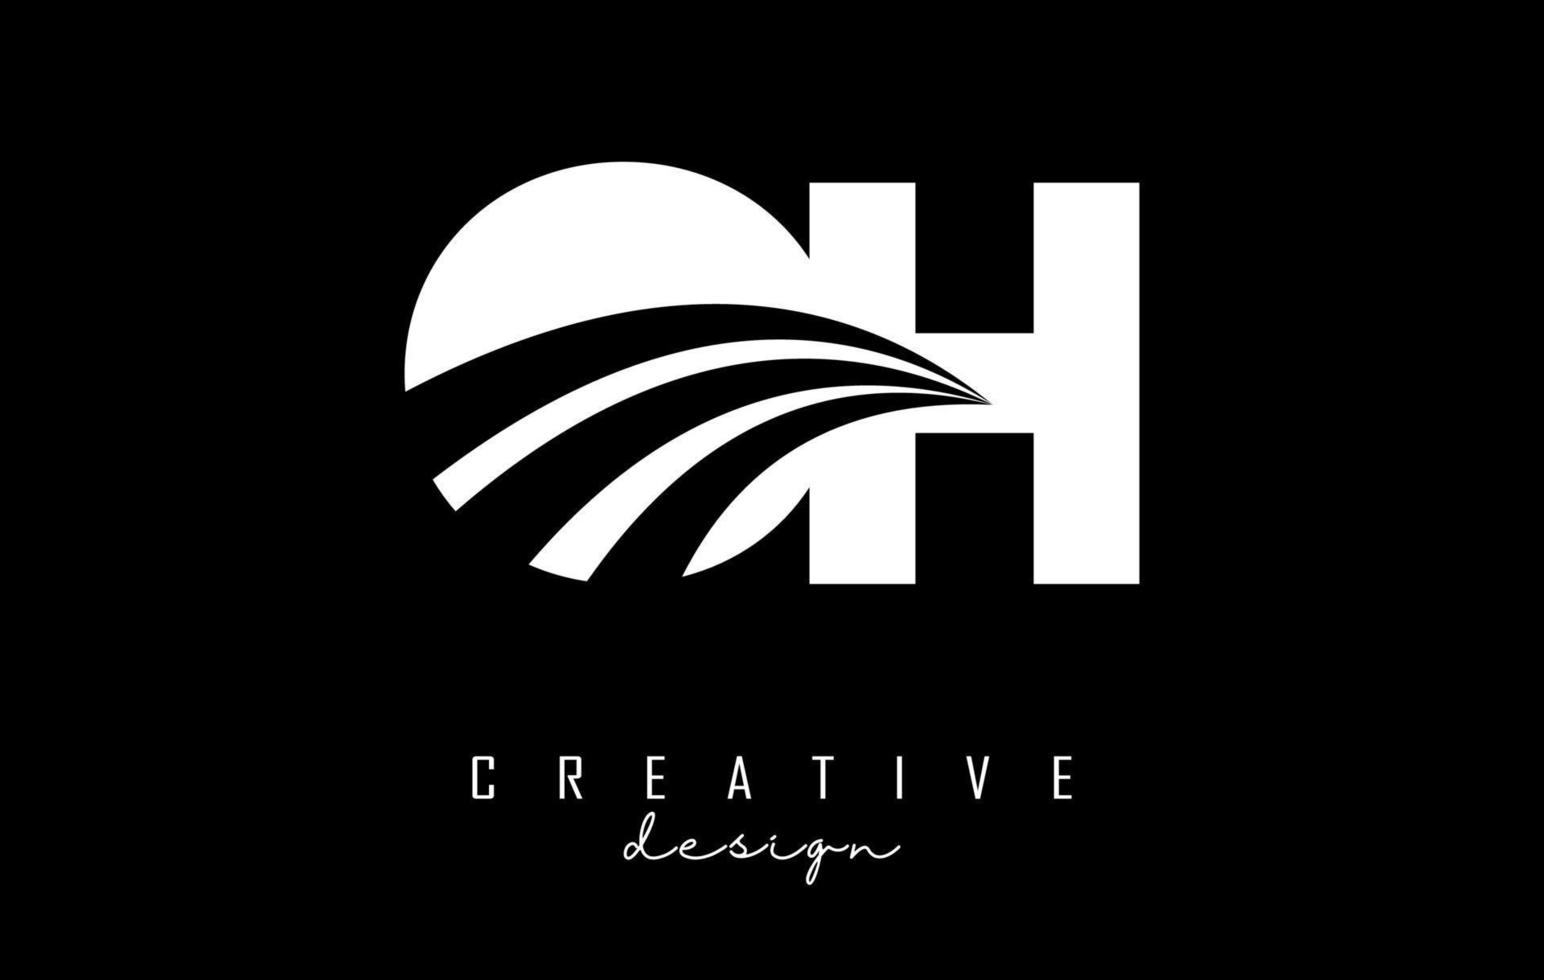 kreative weiße buchstaben oh oh logo mit führenden linien und straßenkonzeptdesign. Buchstaben mit geometrischem Design. vektor